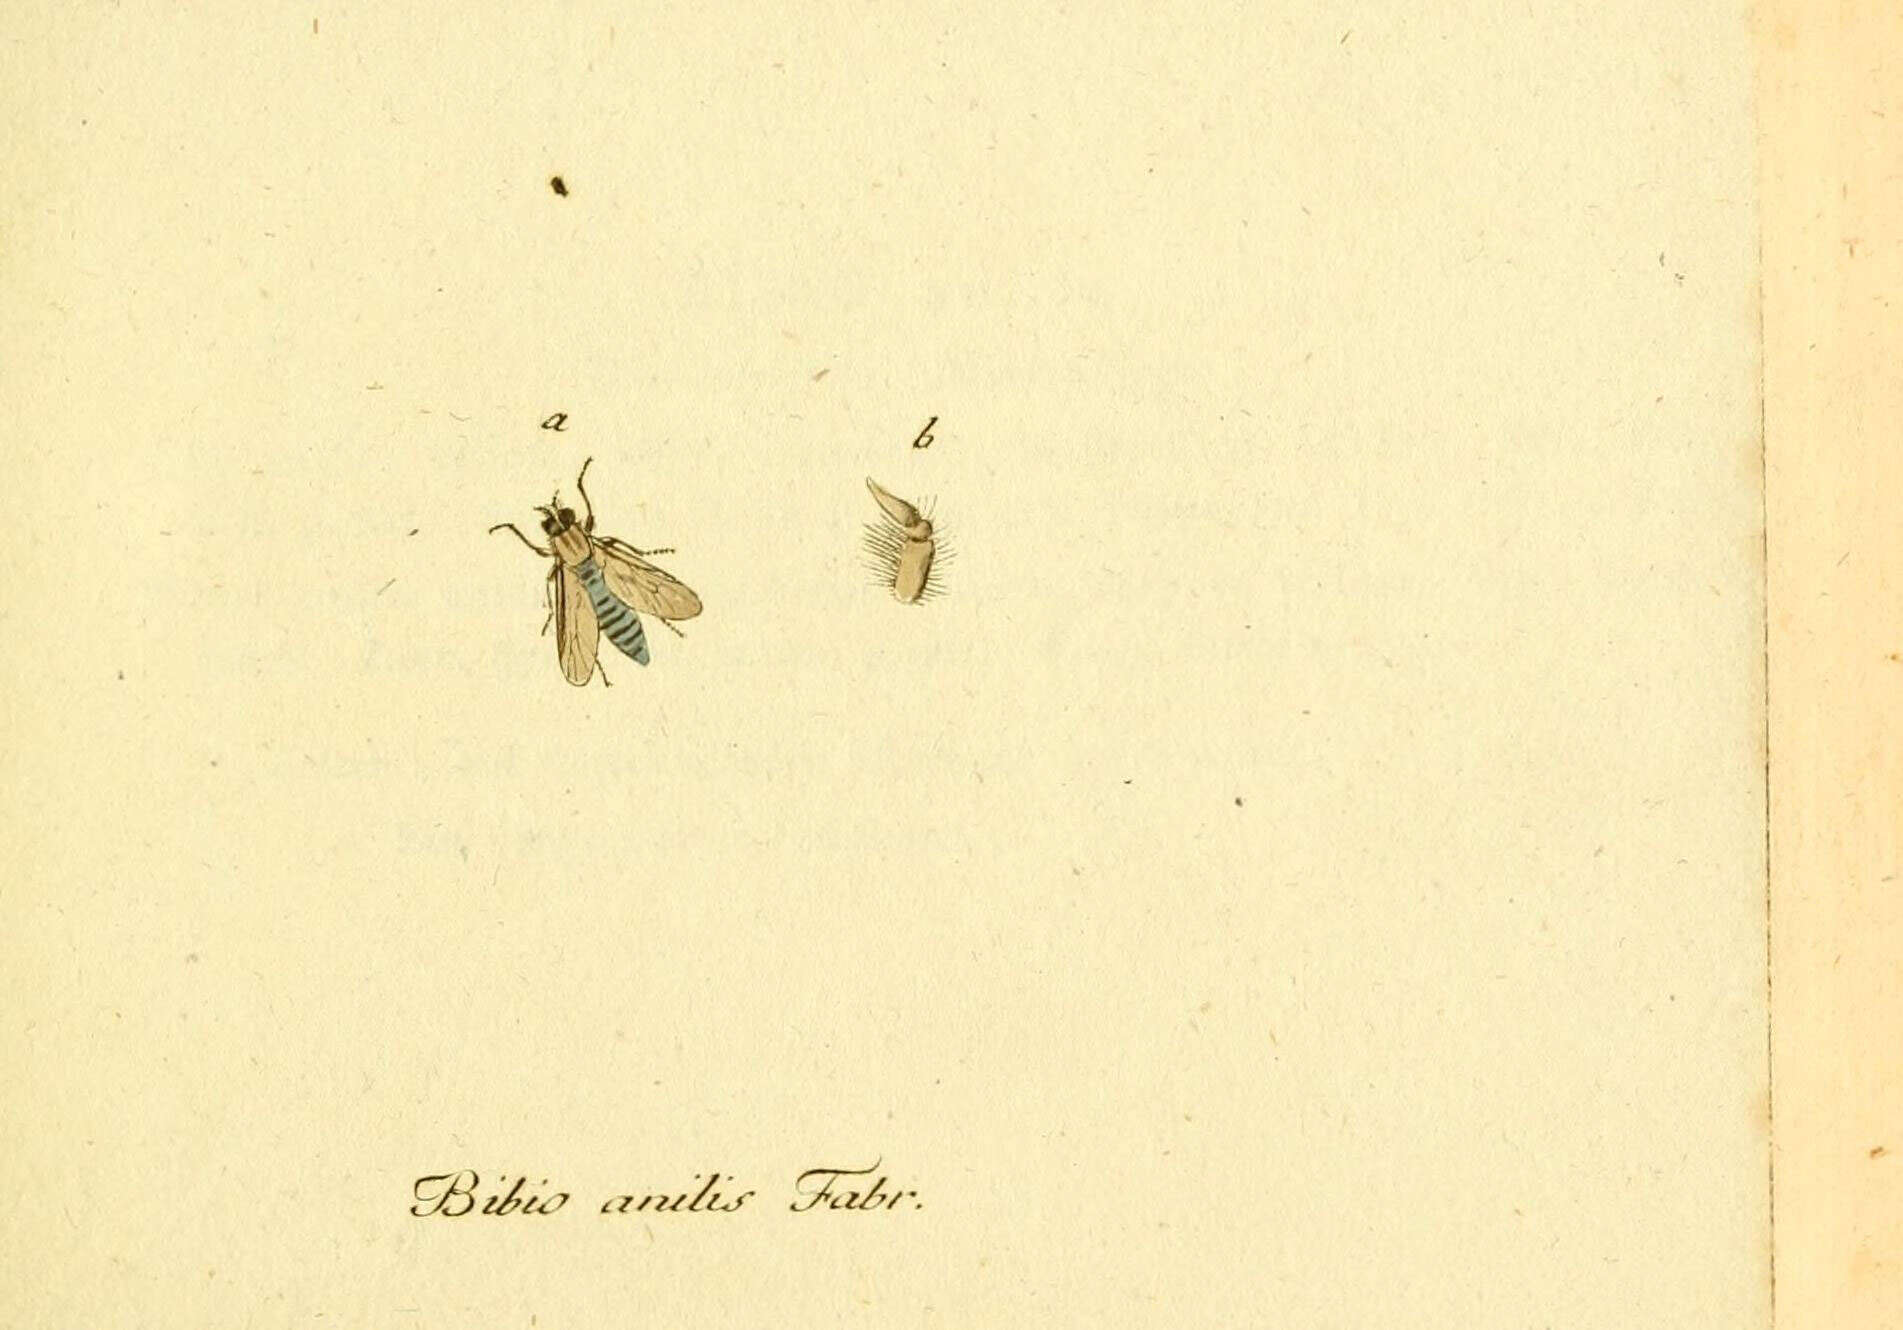 Image de Acrosathe annulata (Fabricius 1805)